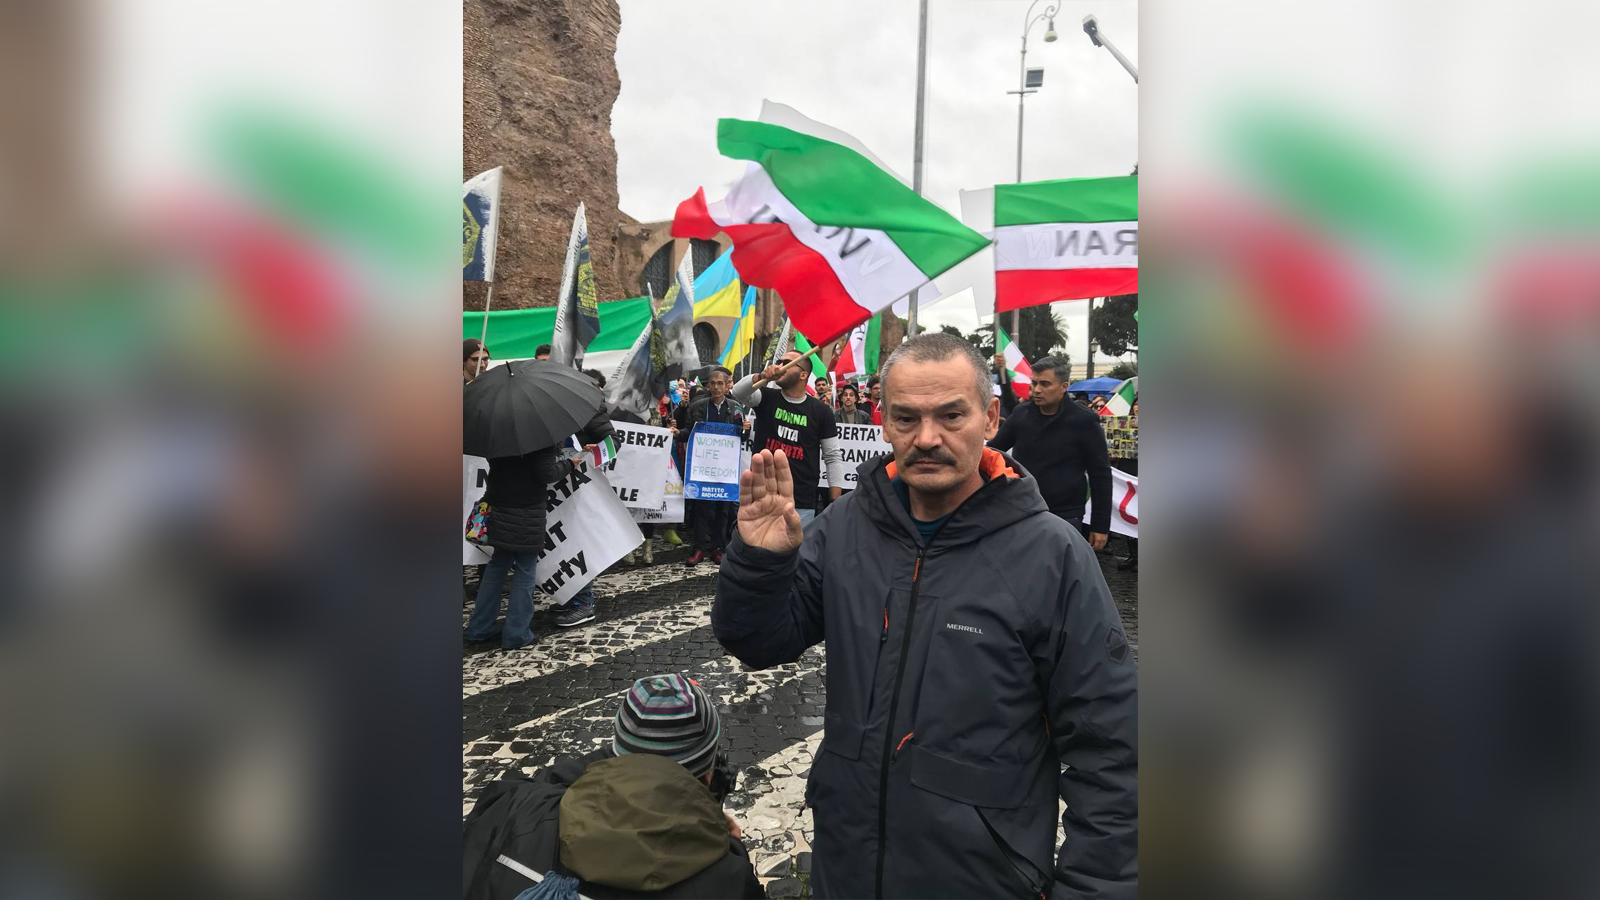 Протест в Риме: участники осудили власть Ирана и РФ, а также поддержали Украину